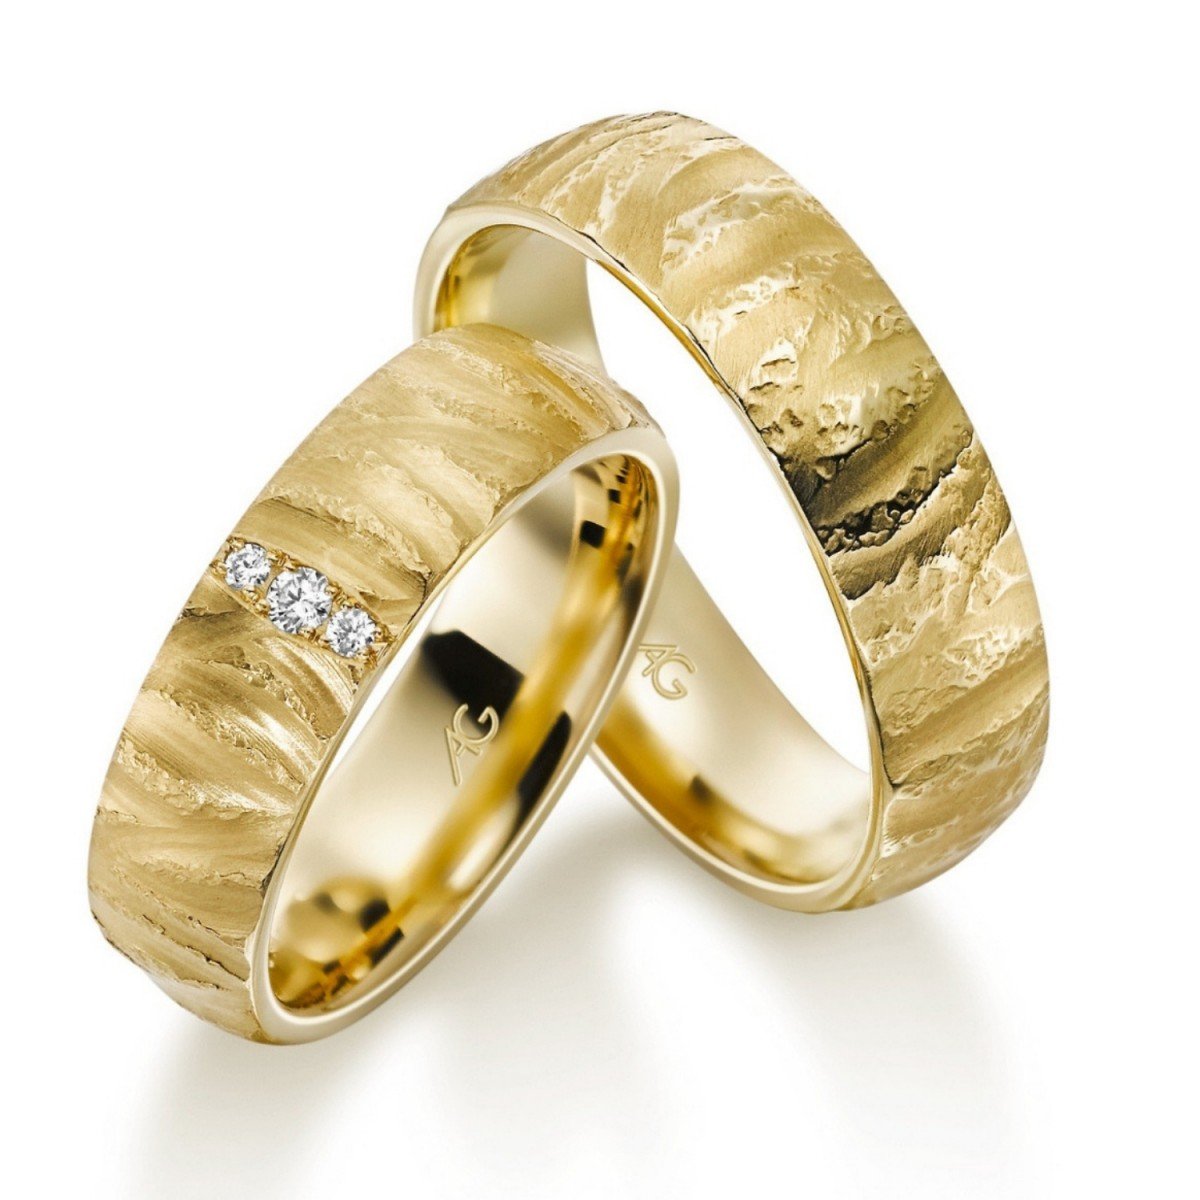 Европейские золотые кольца. Золотой прииск обручальные кольца. Красивые обручальные кольца. Широкие обручальные кольца. Необычные обручальные кольца.